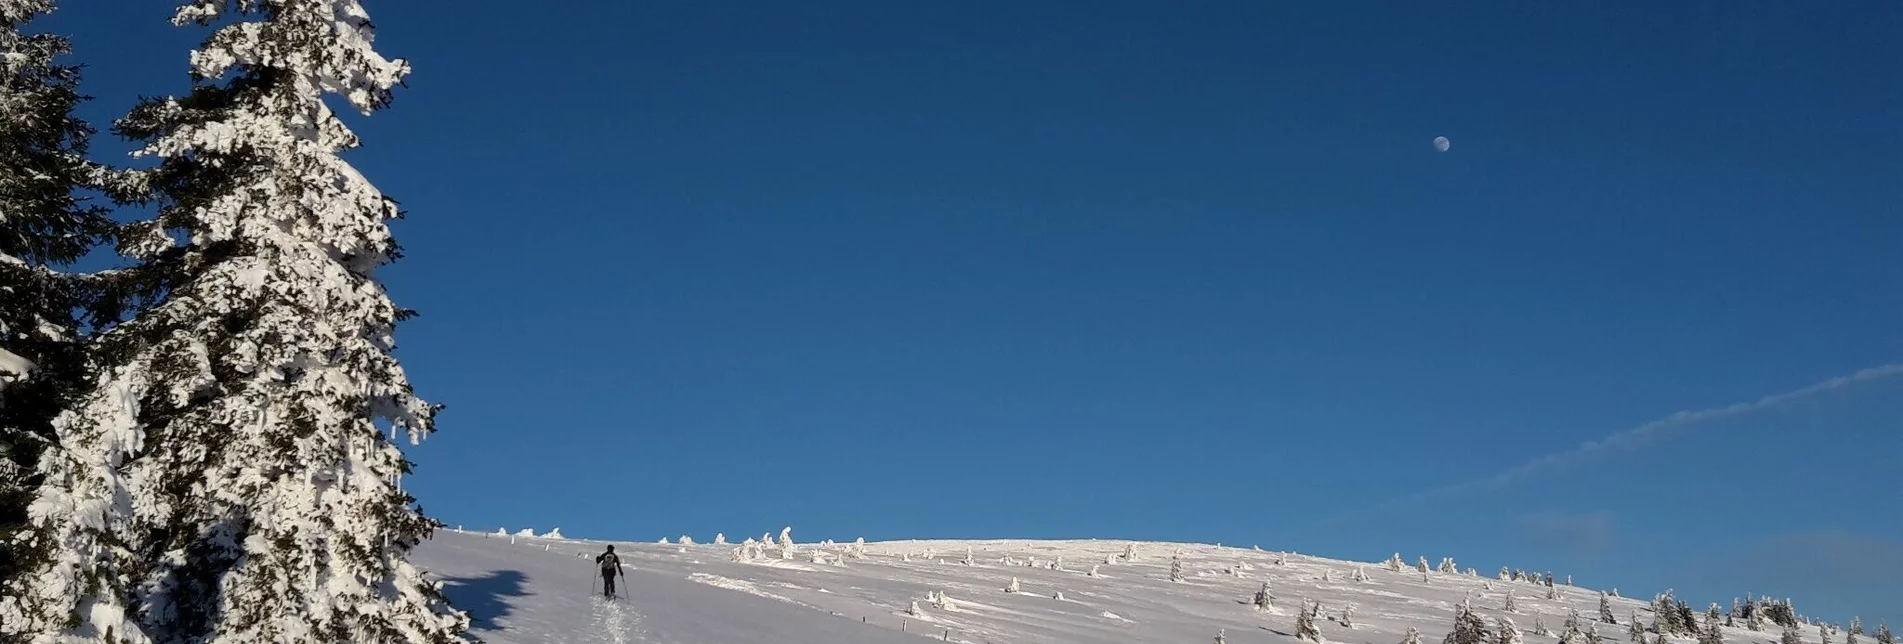 Skitour Von Rettenegg auf das Stuhleck - Touren-Impression #1 | © Unbekannt